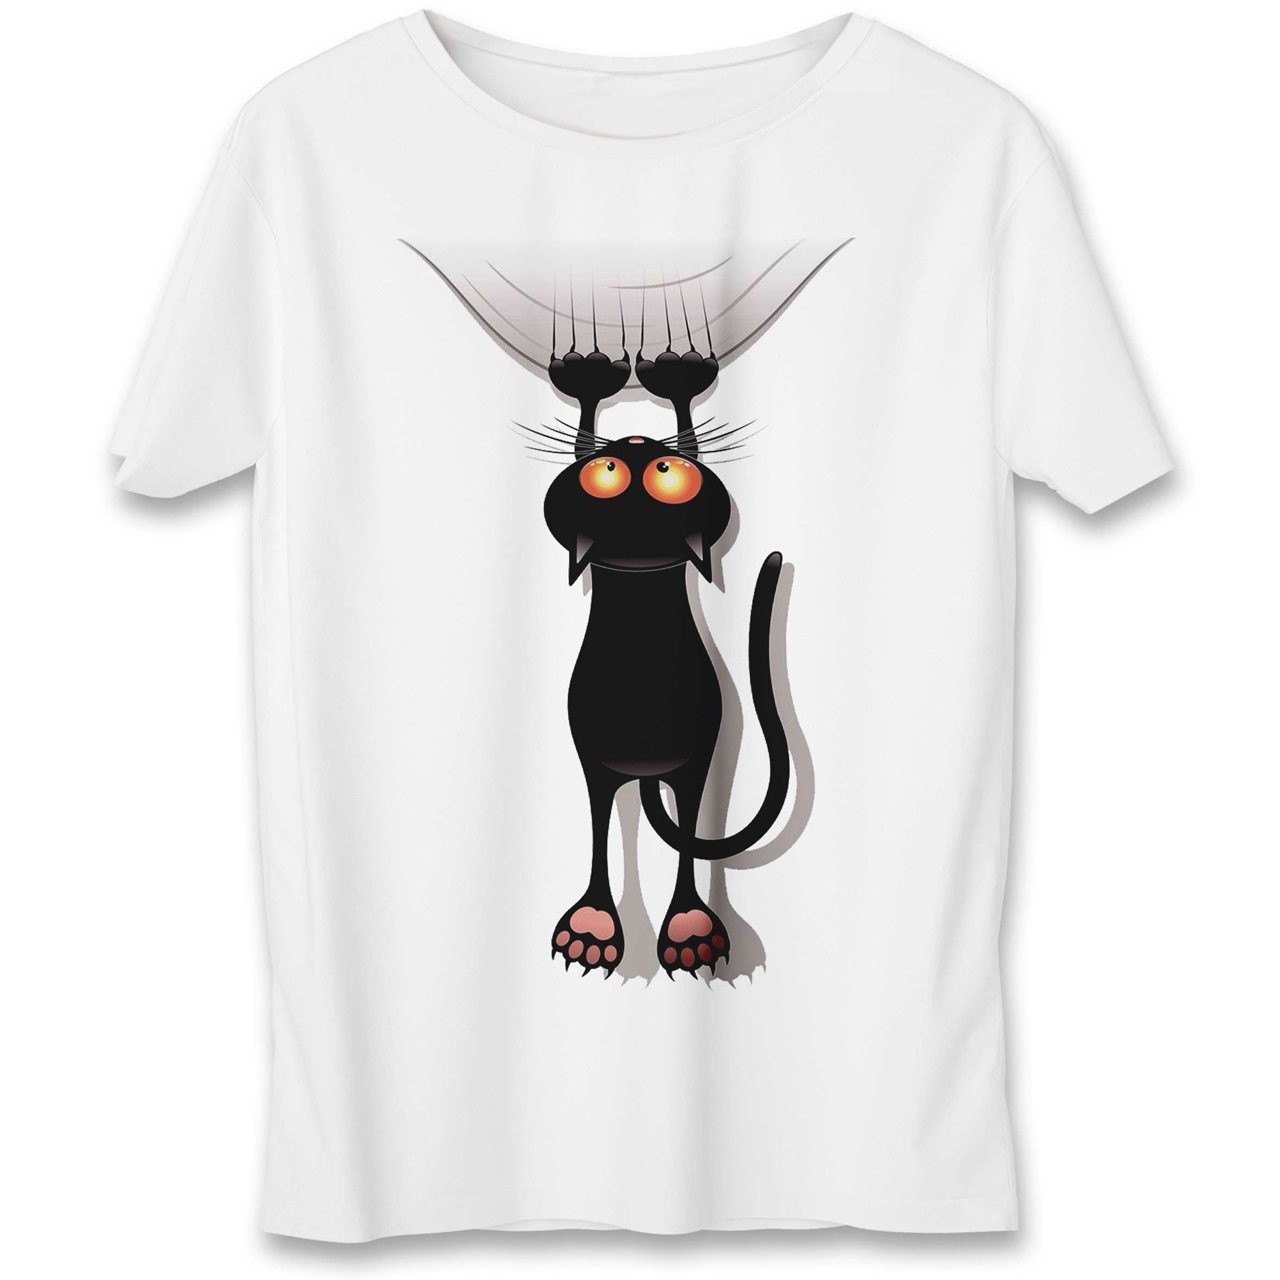 تی شرت به رسم طرح گربه کد 556 -  - 1